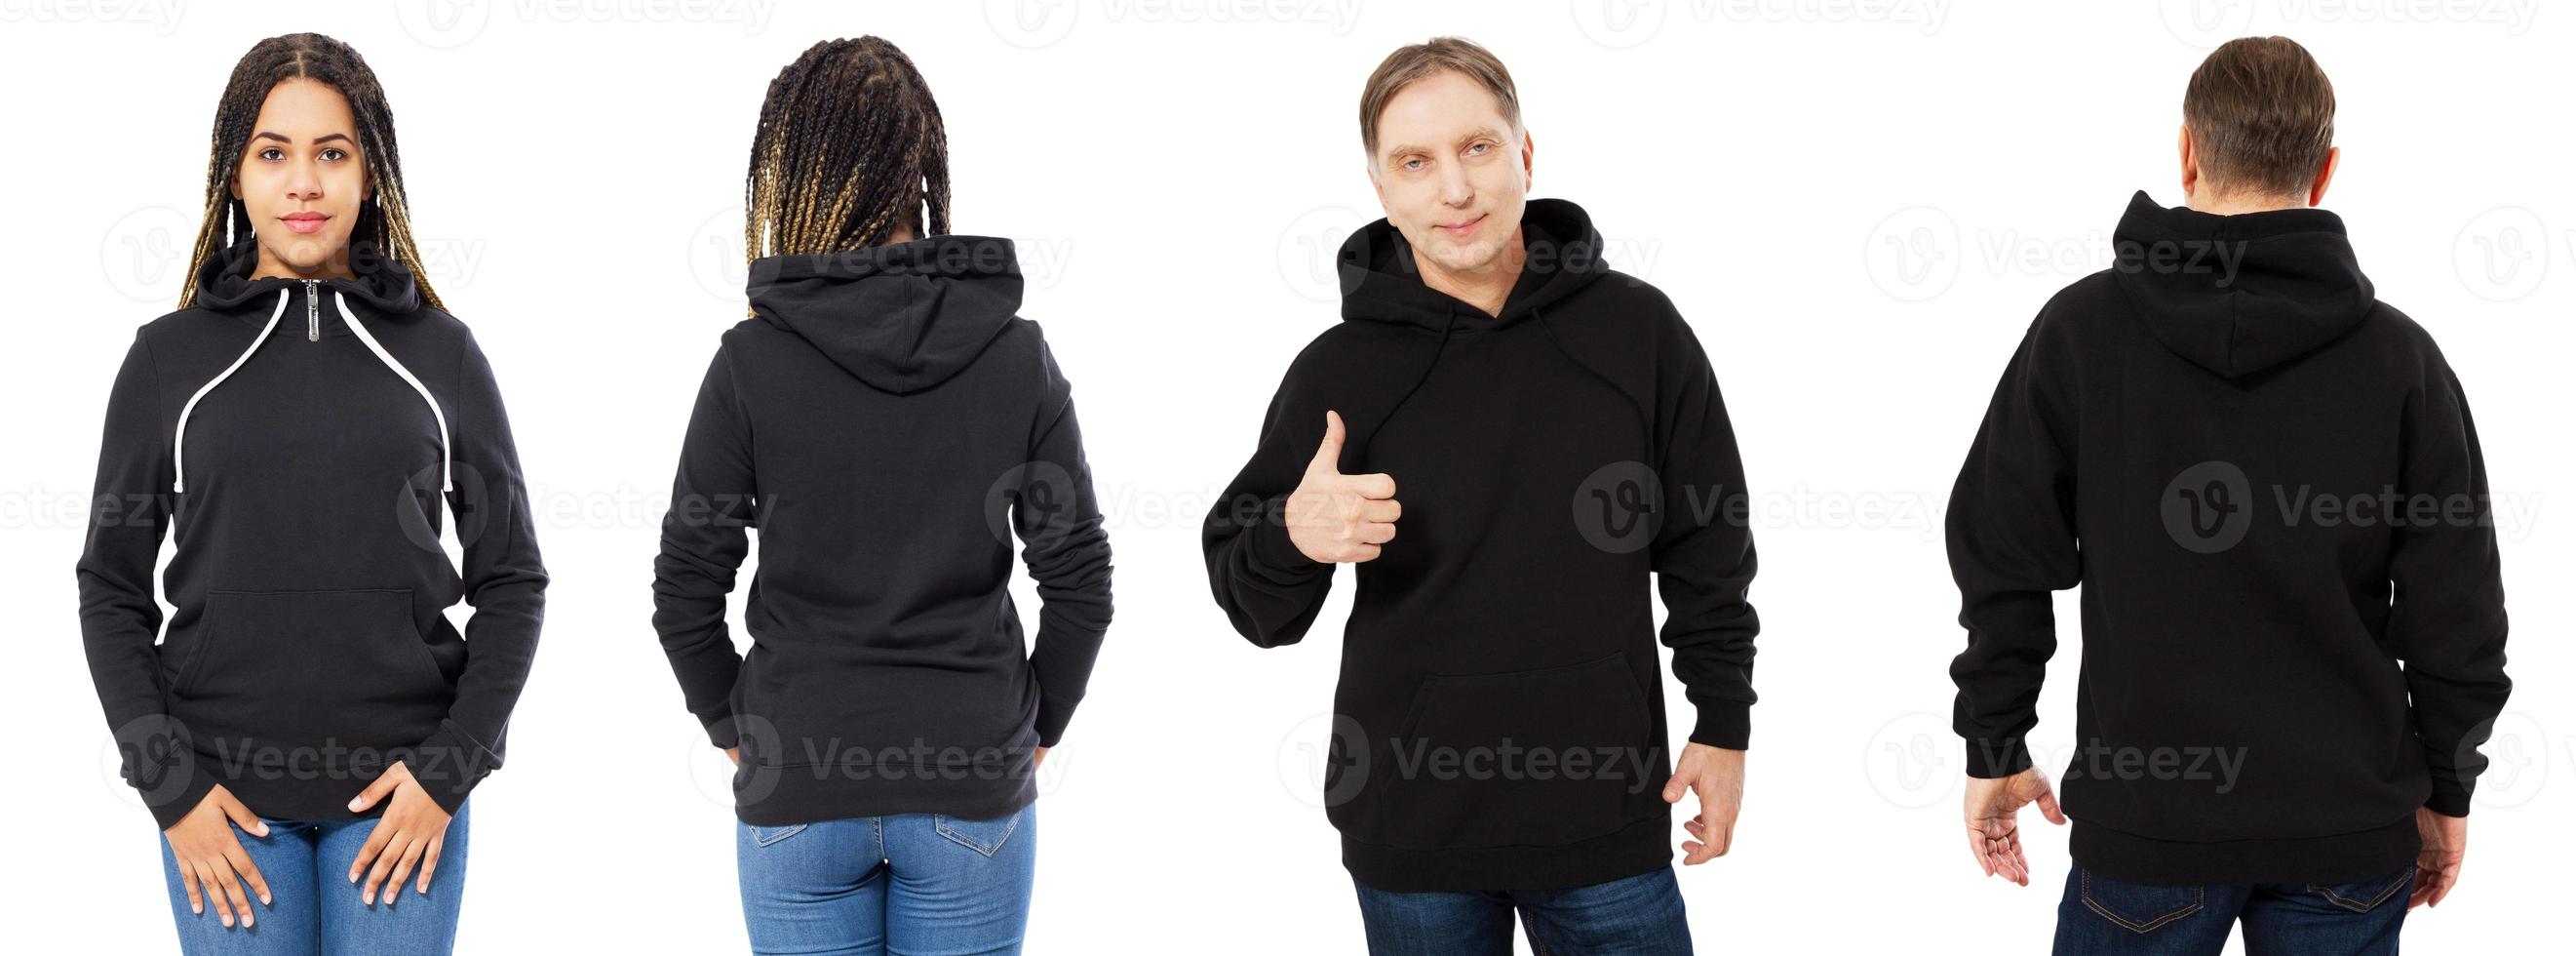 Chica afroamericana en sudadera con capucha negra vista frontal y trasera, hombre en conjunto de sudadera negra collage aislado sobre fondo blanco, maqueta de capucha foto